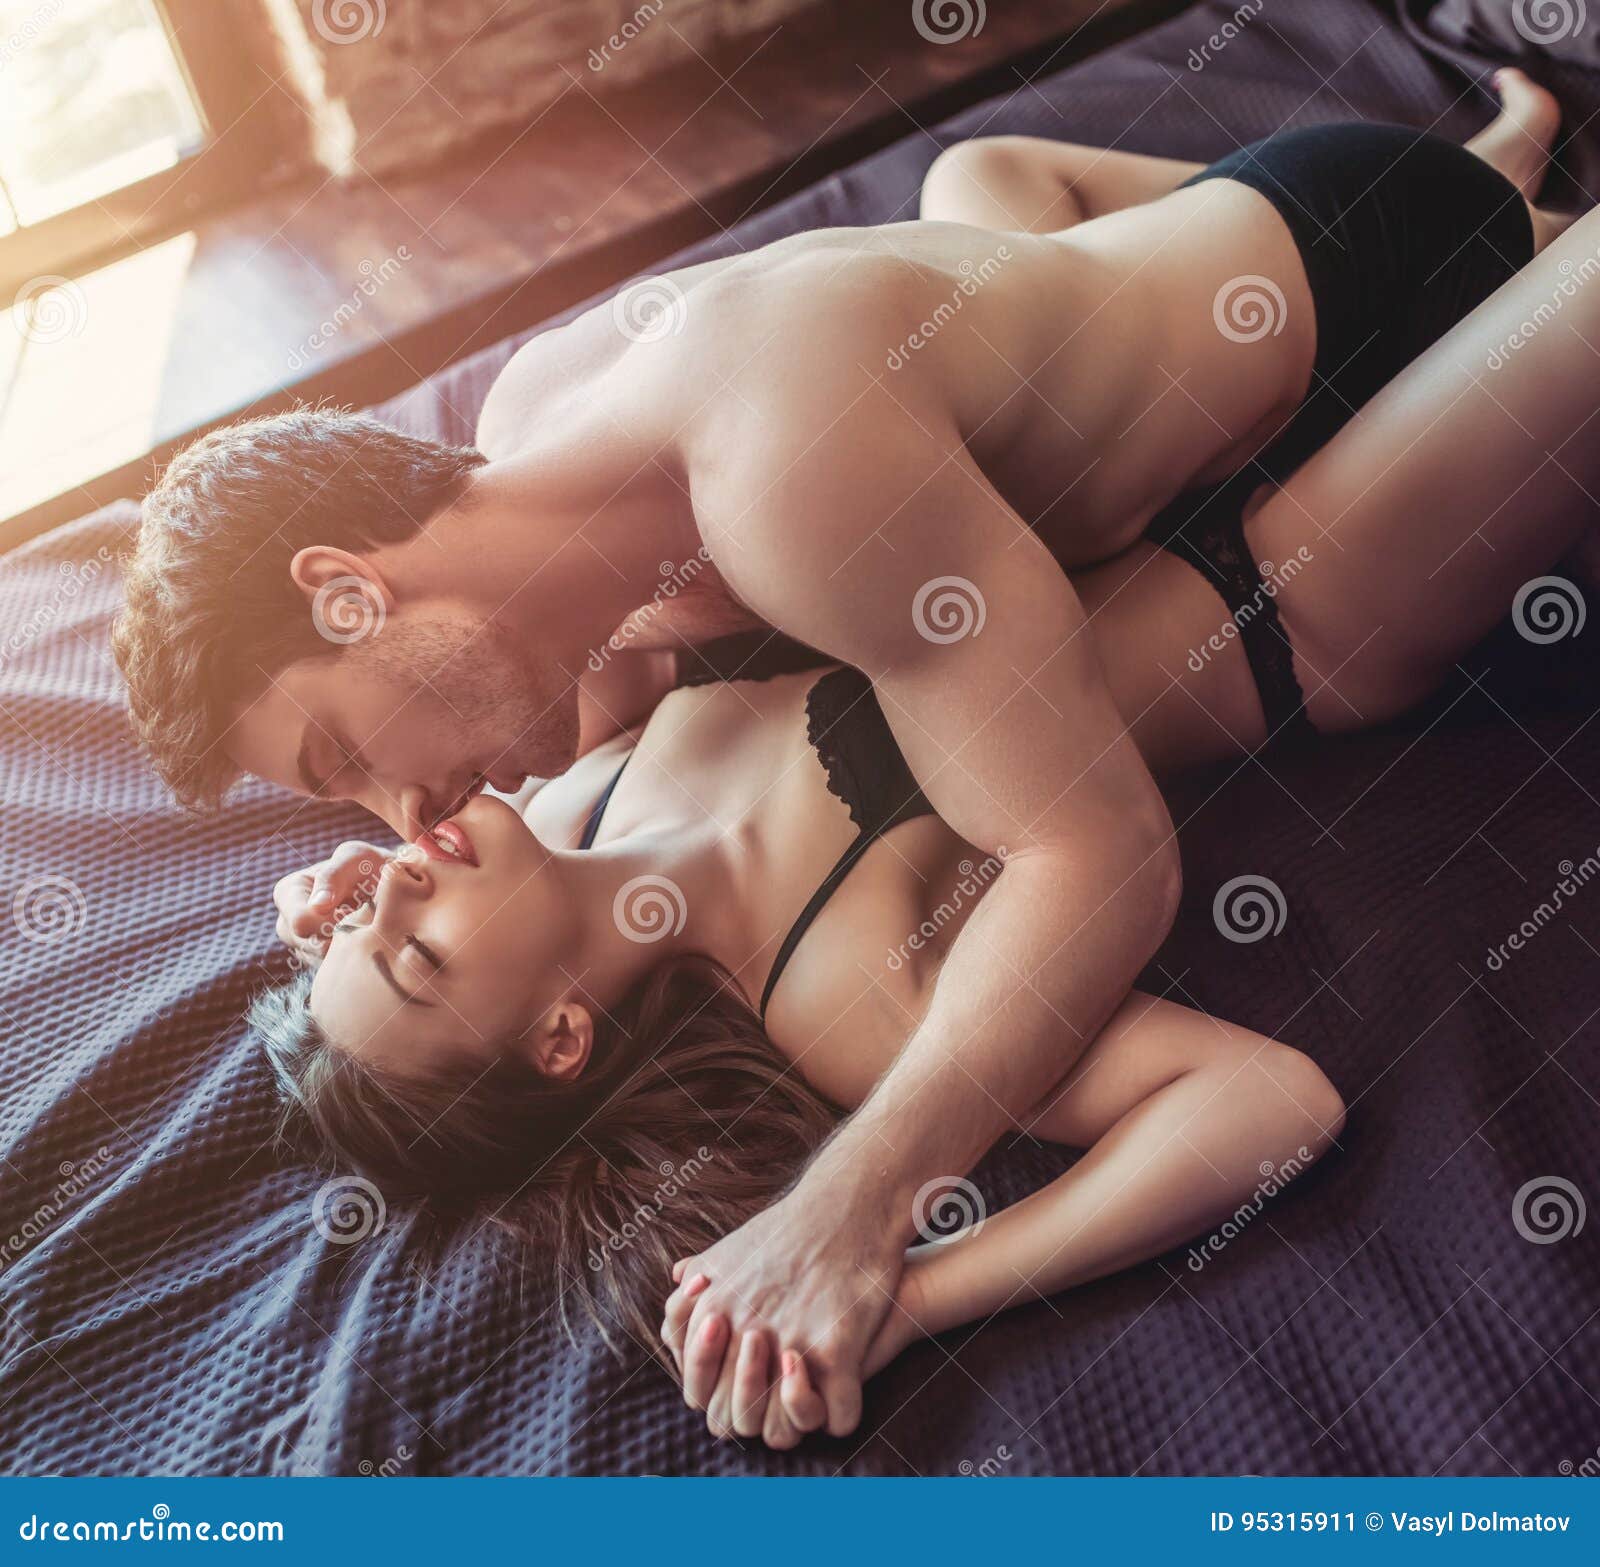 destiny zepeda share imajenes de sexo photos